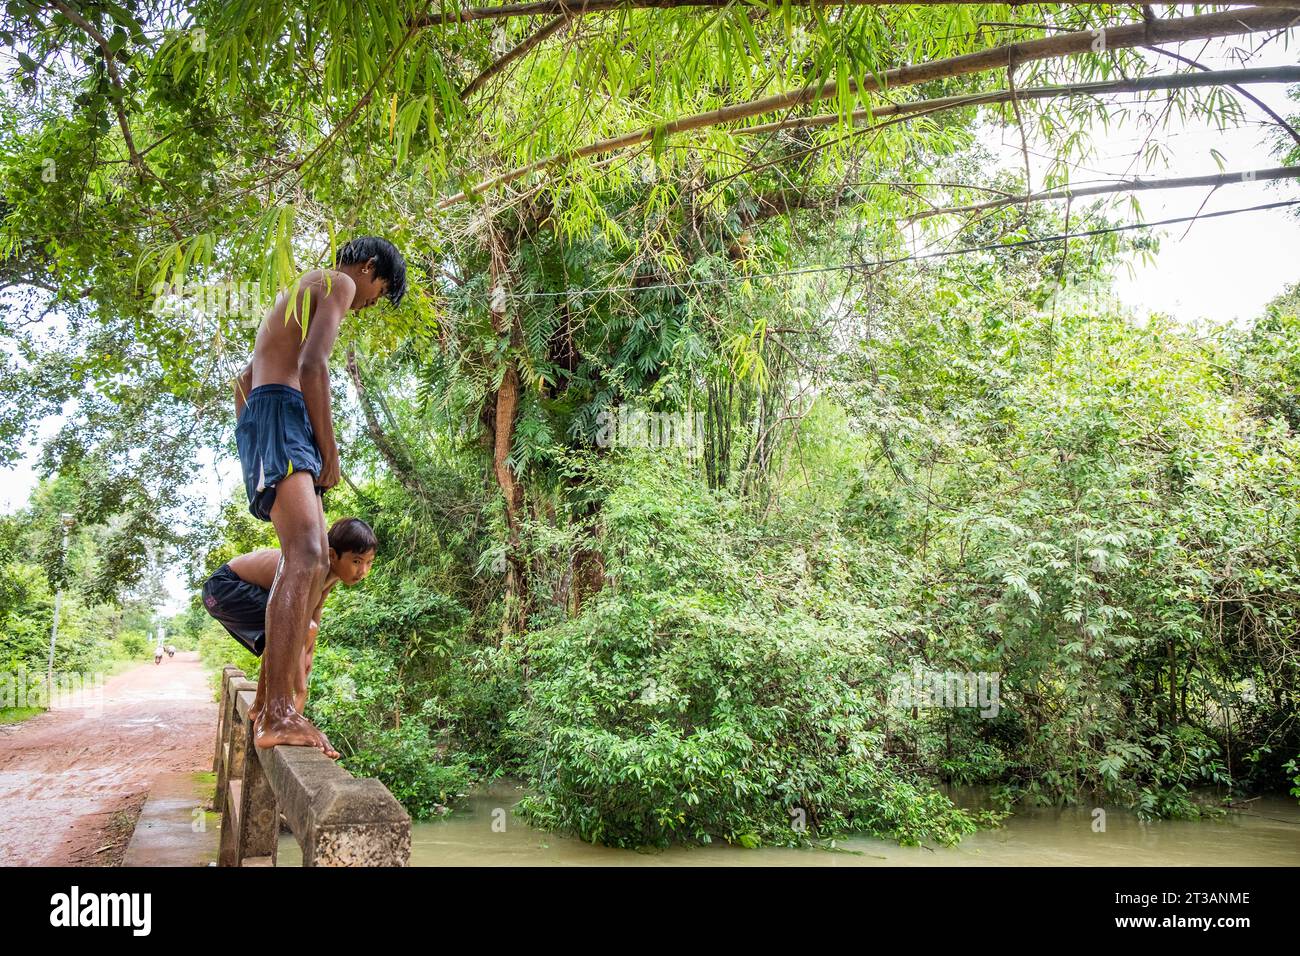 Camboya, Kampong Phluk, los niños se sumergen en el río hinchado Foto de stock